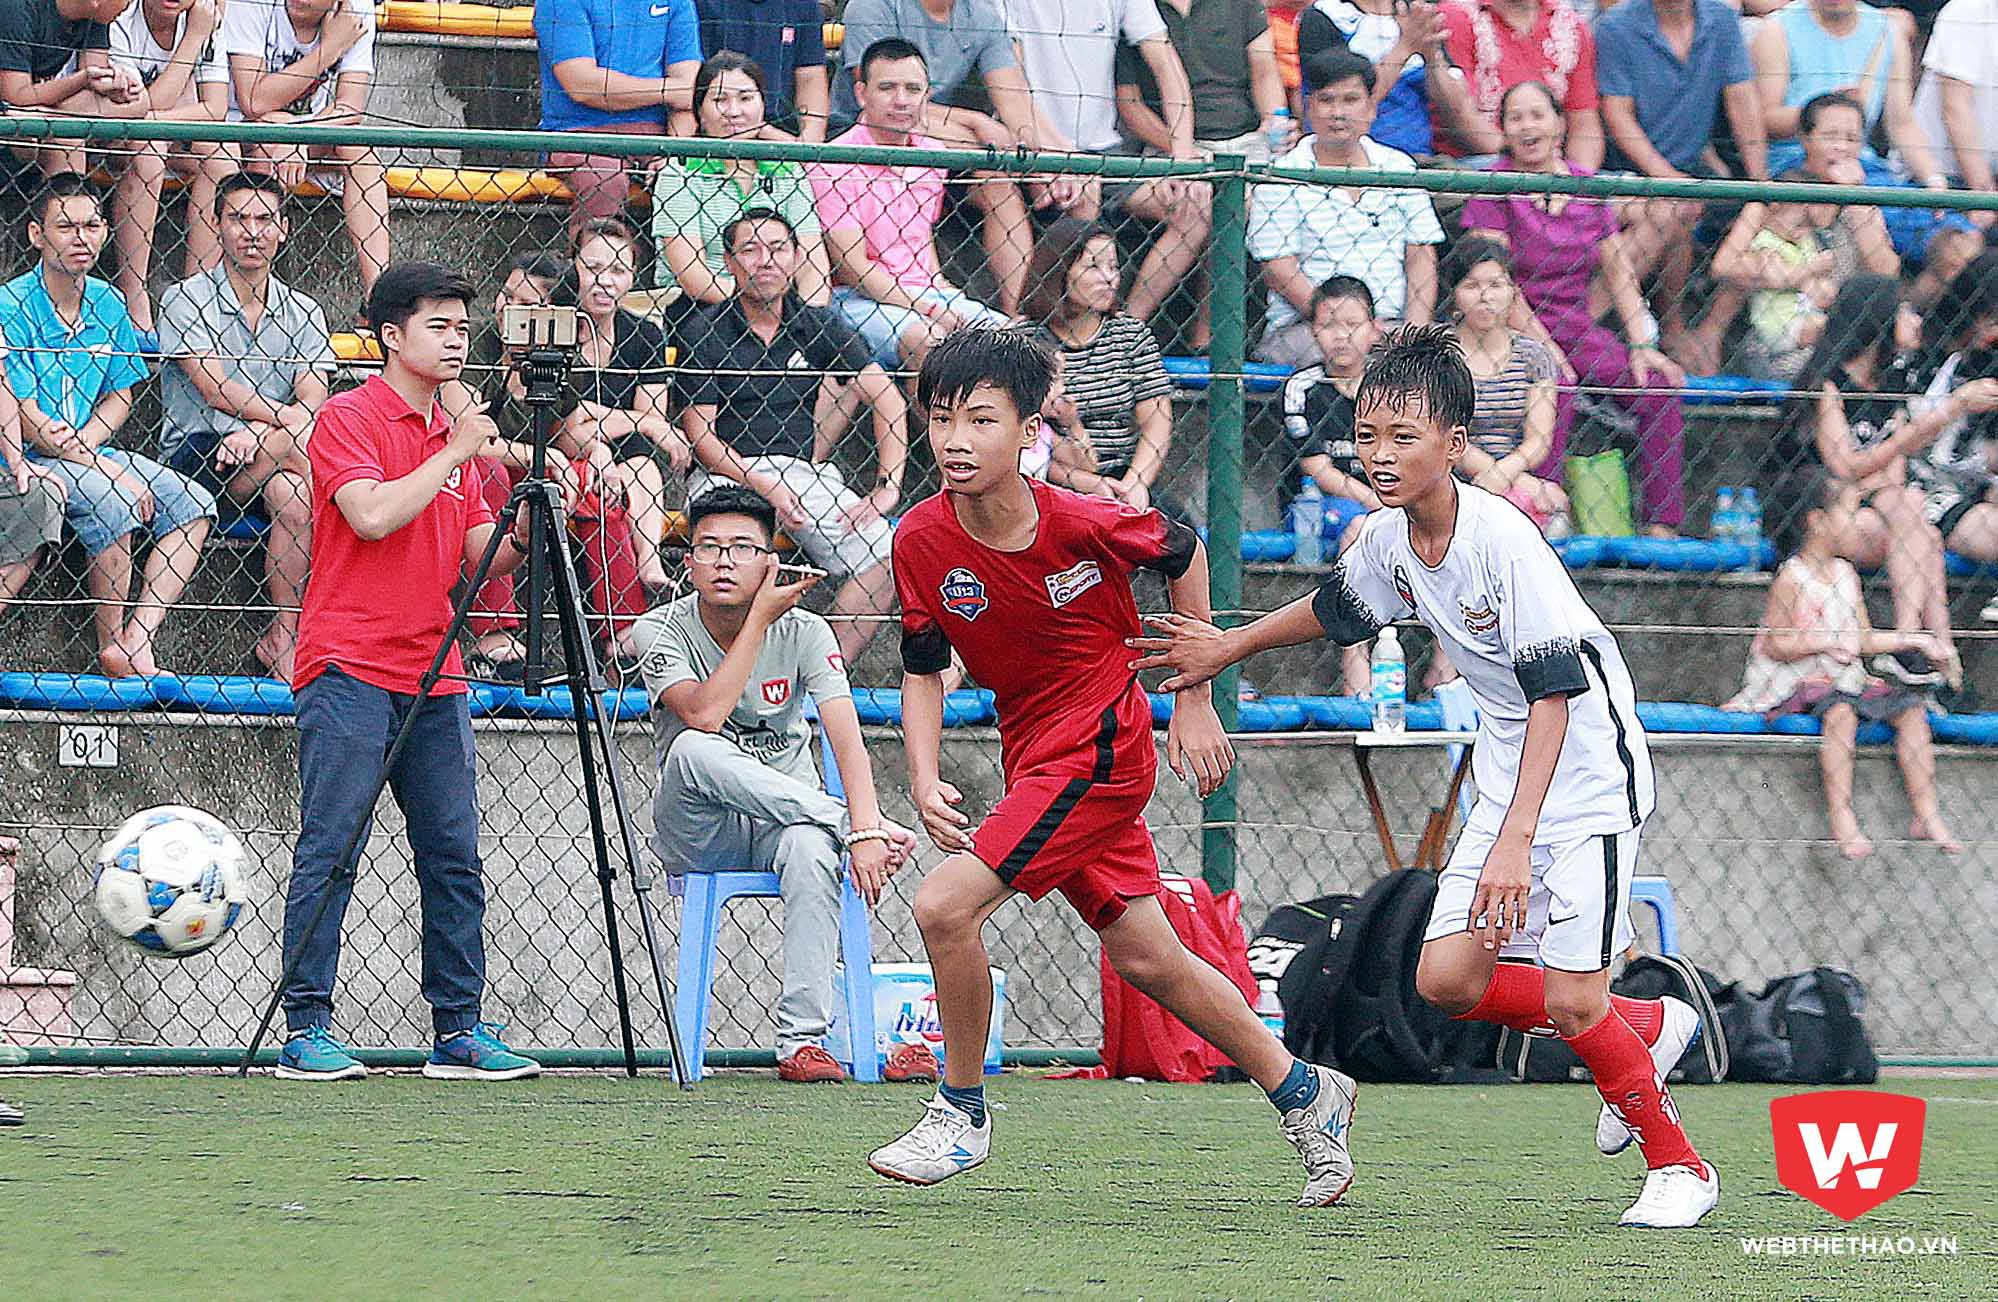 Dáng người mảnh khảnh, nhìn như ''không biết đá bóng'' nhưng Thành Công đang là cầu thủ gây ấn tượng mạnh nhất ở VCK U13 bóng đá học đường 2017. Ảnh Hải Đăng